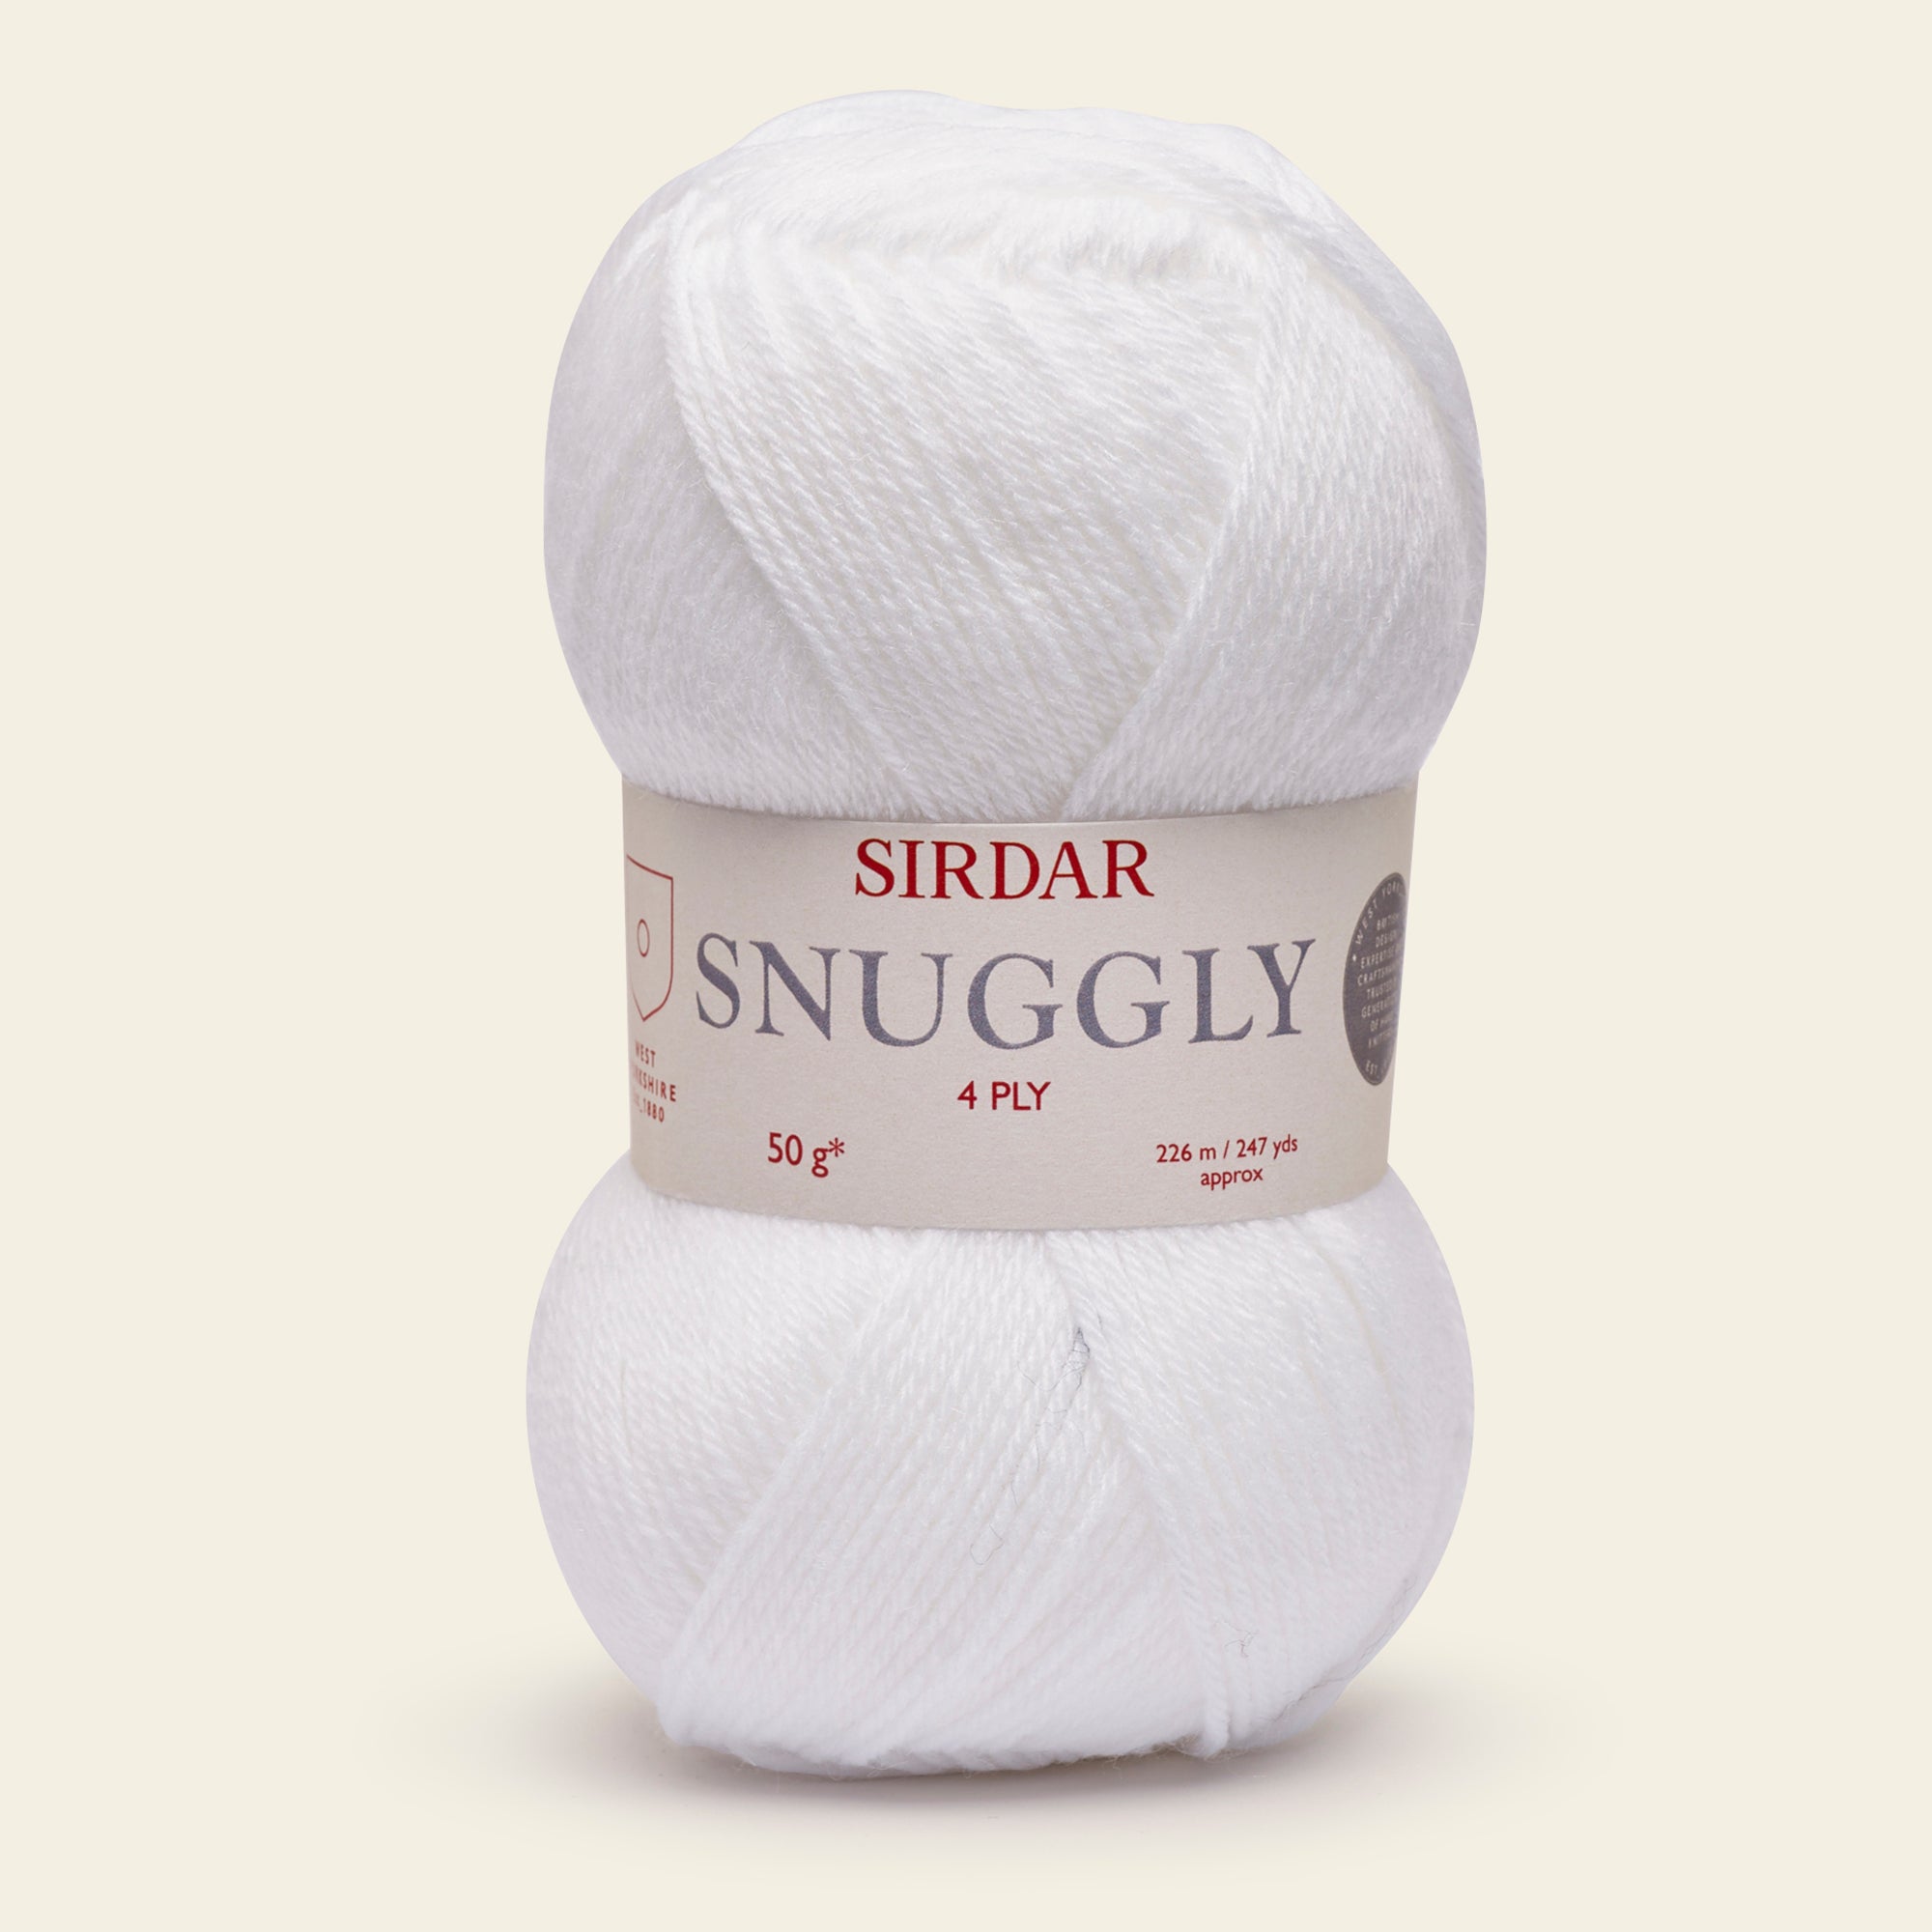 Sirdar Snuggly 4 Ply White Yarn